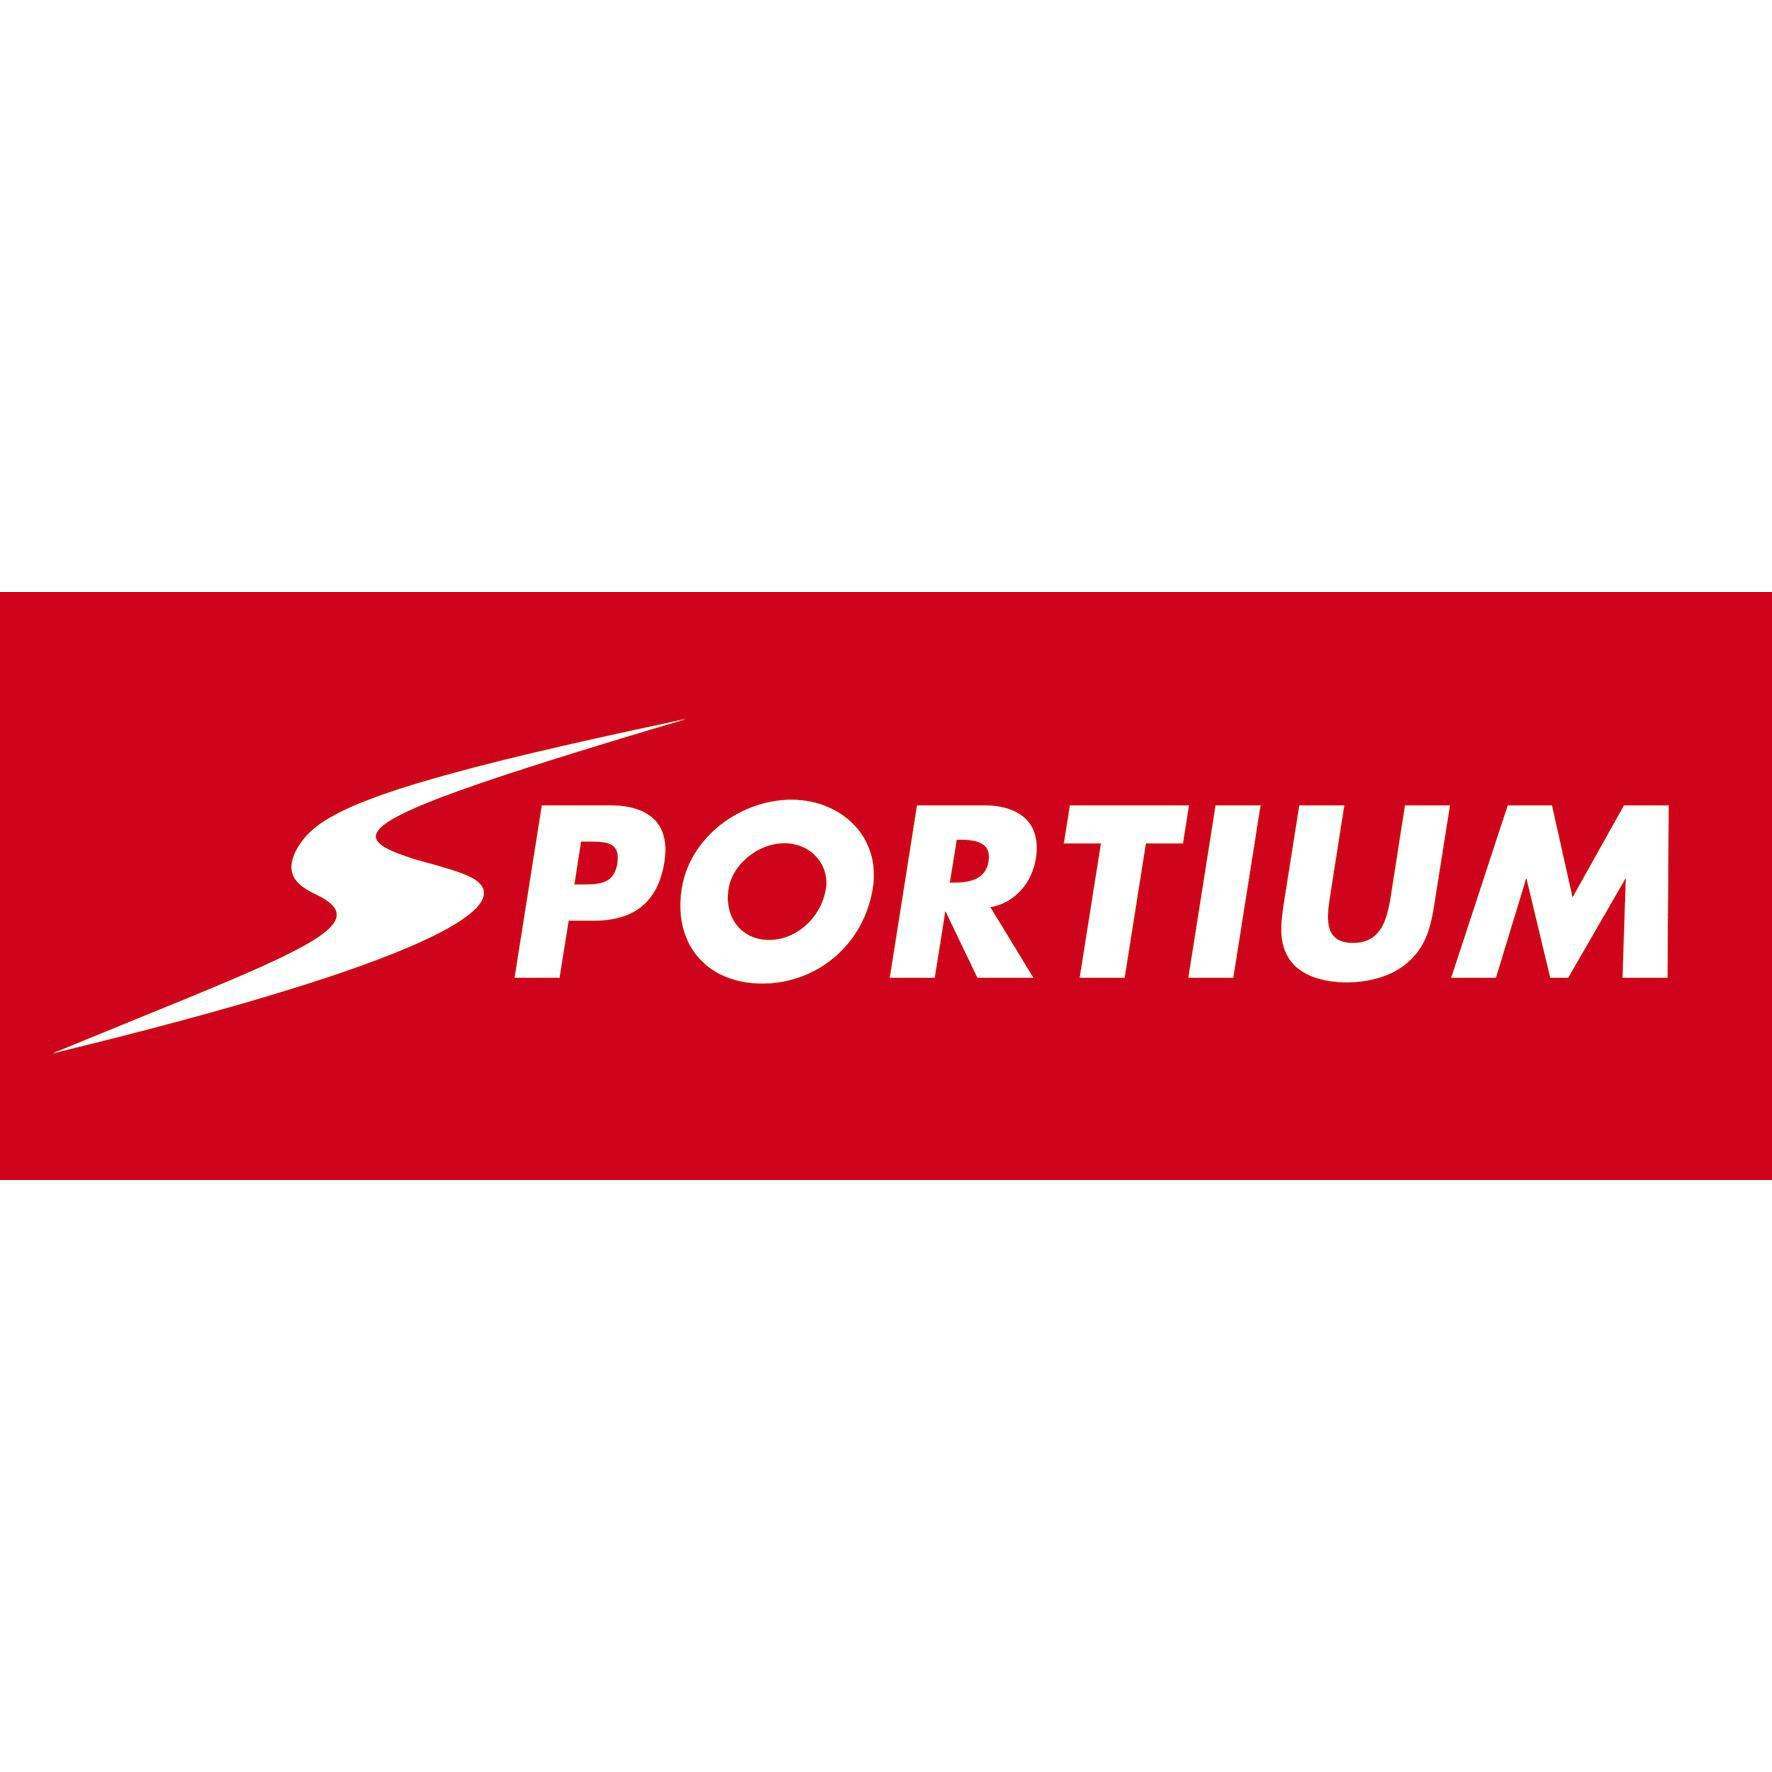 Sportium en Sal\u00F3n Tordera 900447744